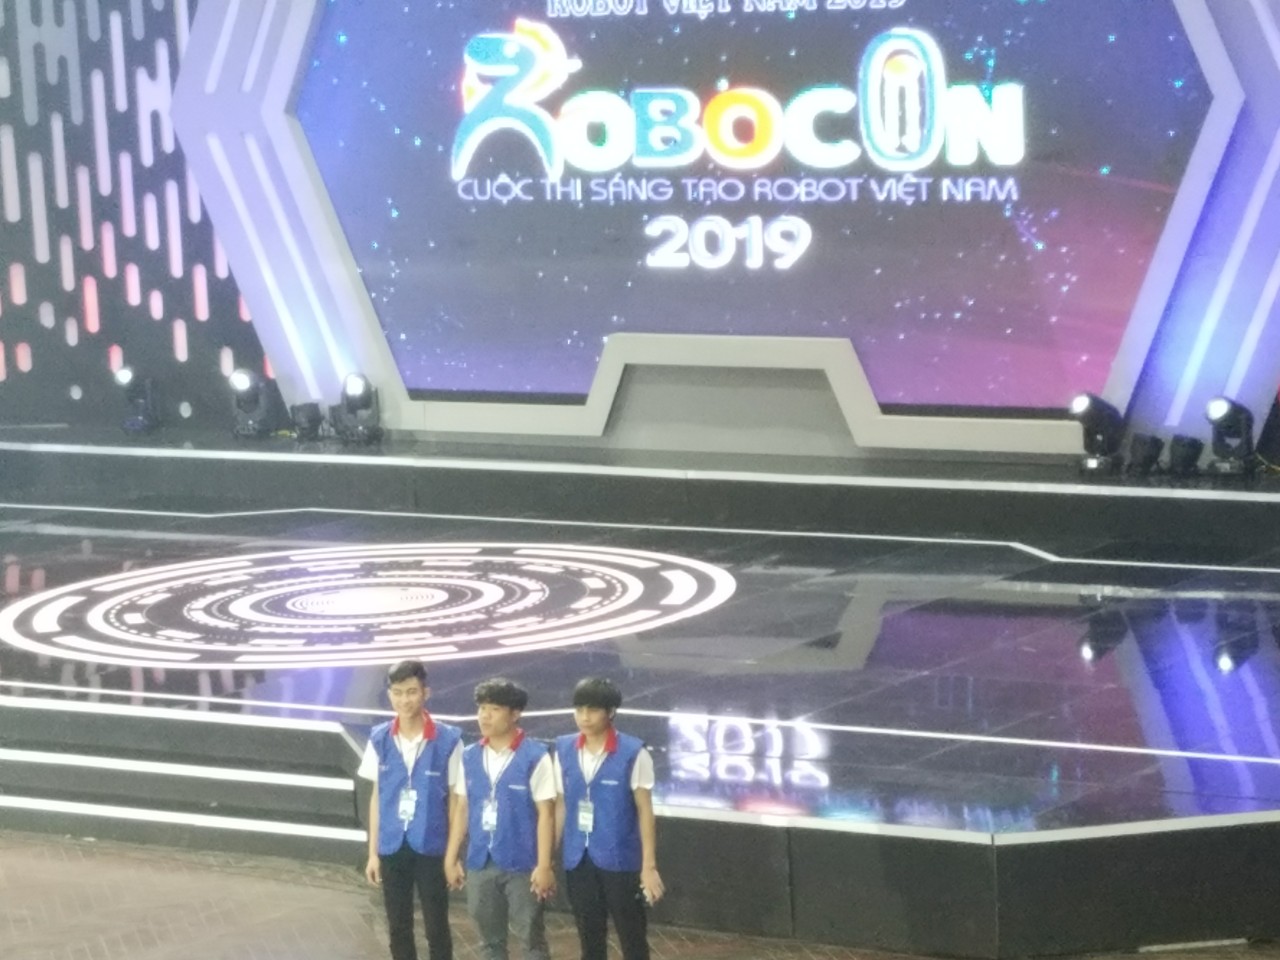 Đội DCN-ME Khoa Cơ khí, chính thức giành tấm vé tham gia vòng chung kết toàn quốc Robocon 2019